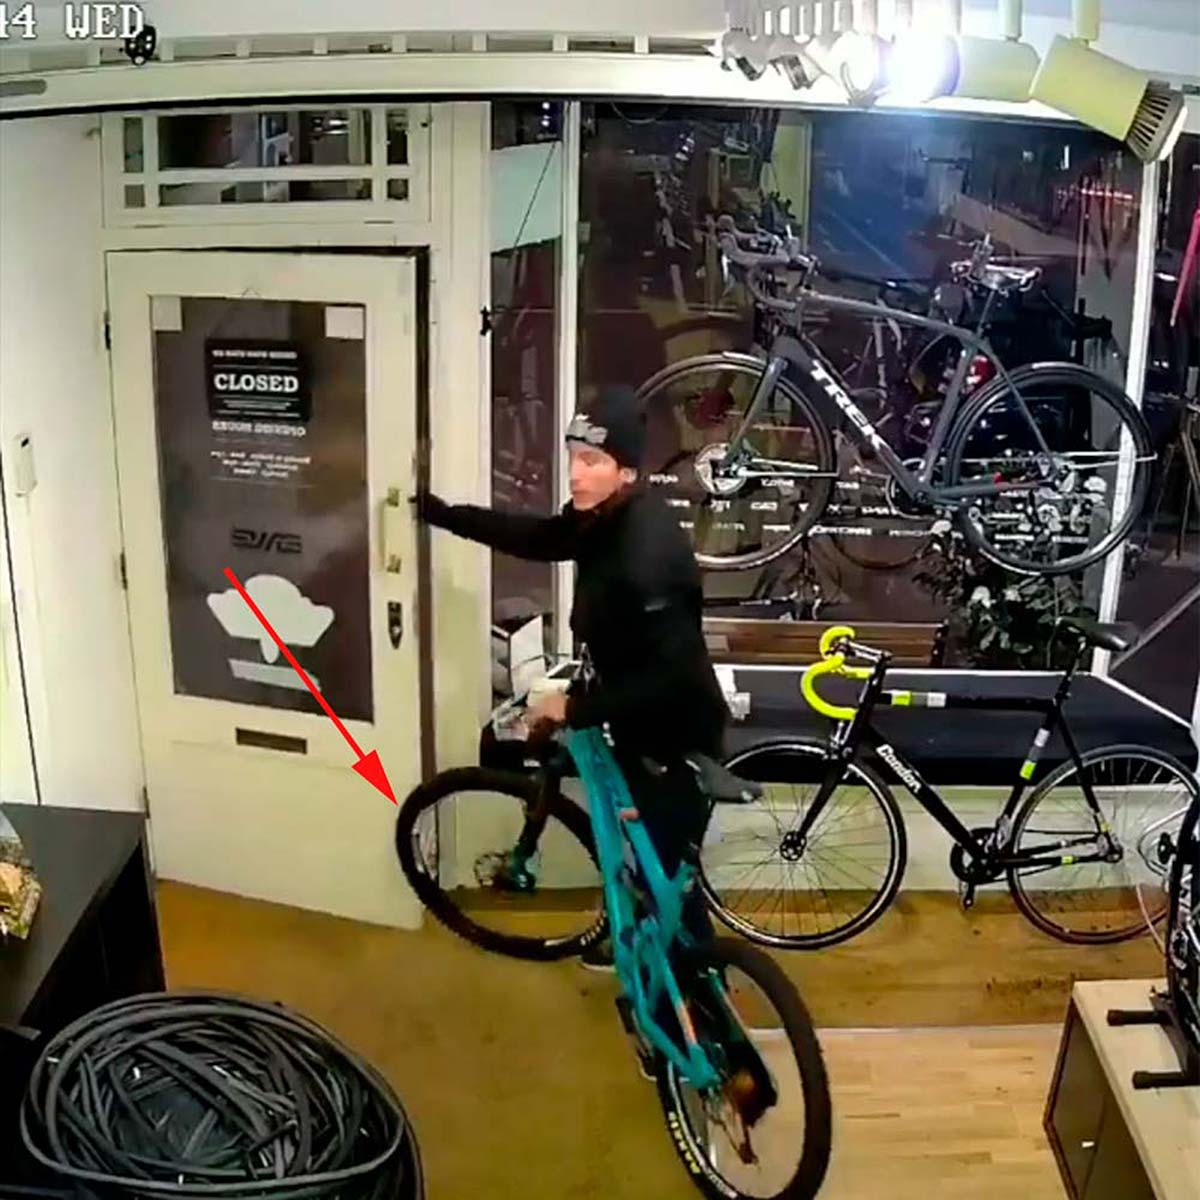 En TodoMountainBike: El frustrado intento de robo de un ladrón (bastante tonto) en una tienda de bicis de Londres